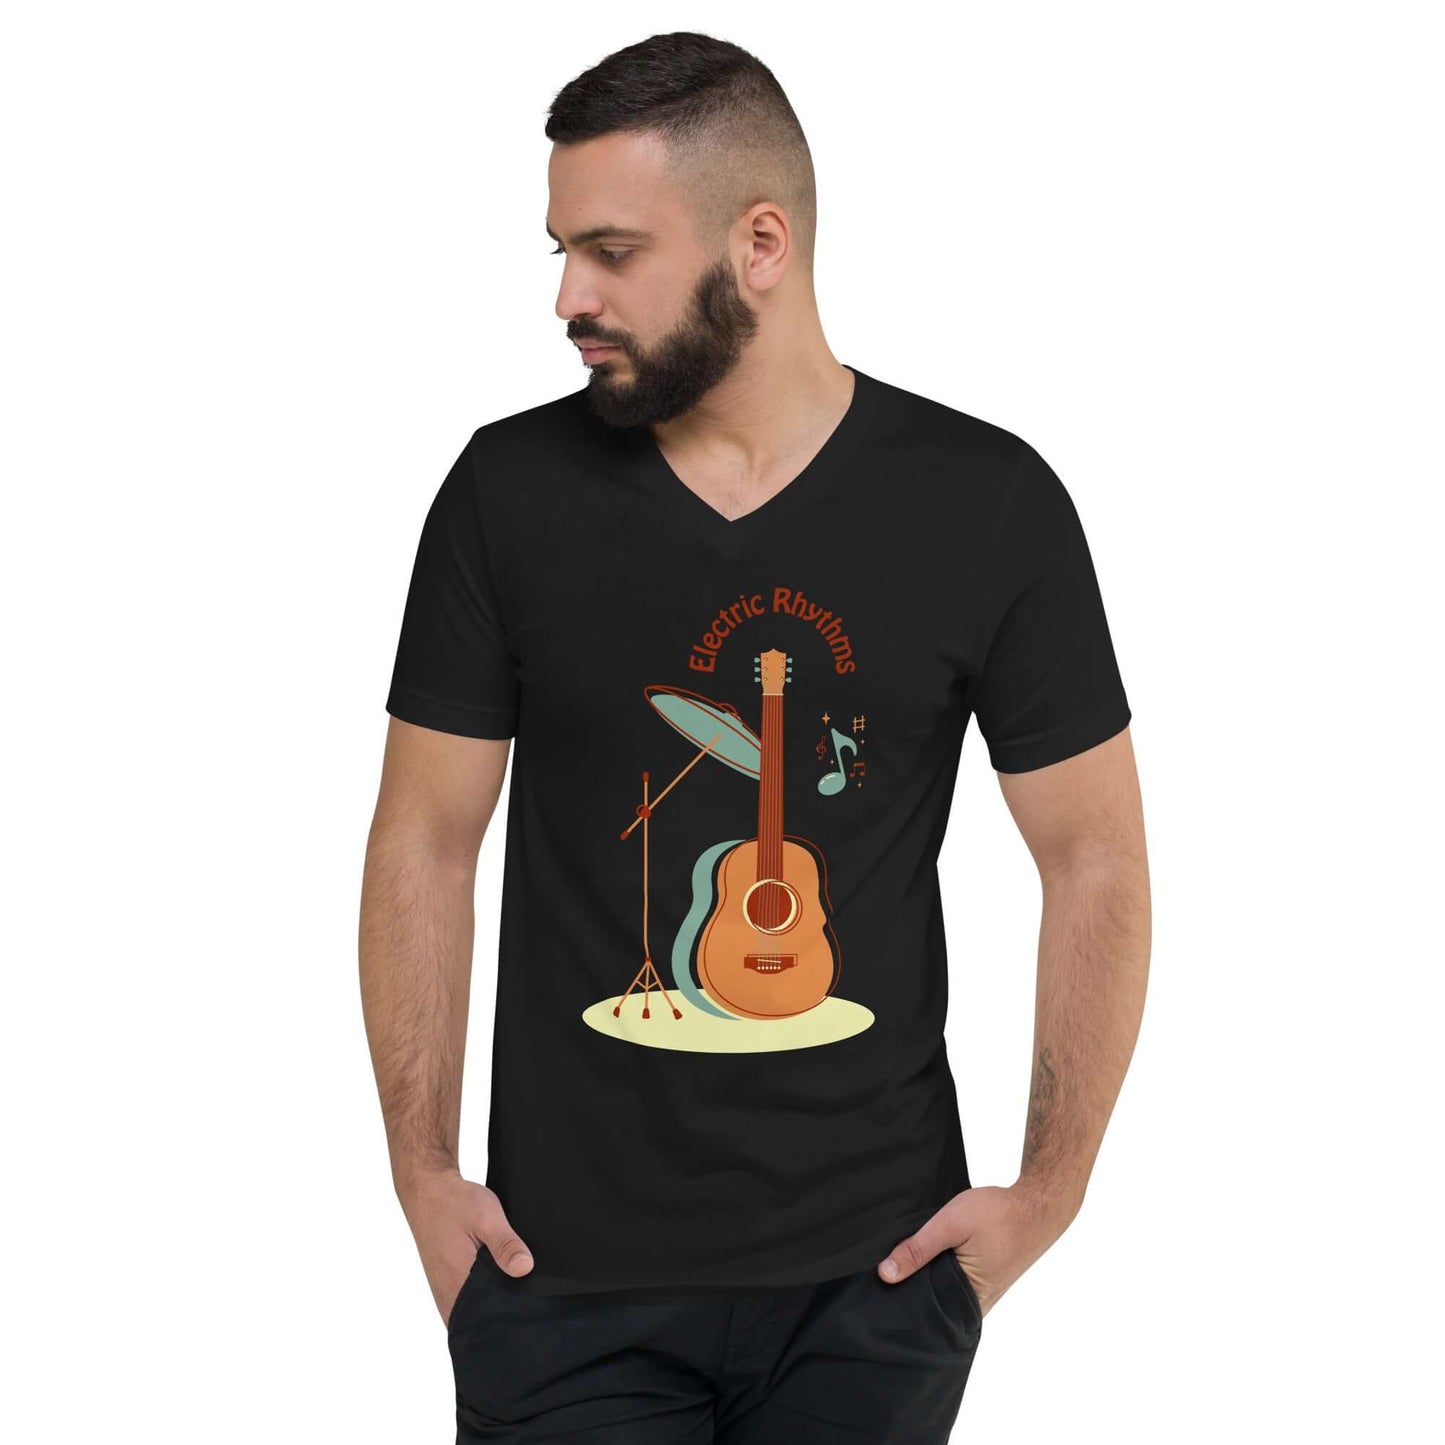 Guitar art Unisex Short Sleeve V-Neck T-Shirt guitarmetrics